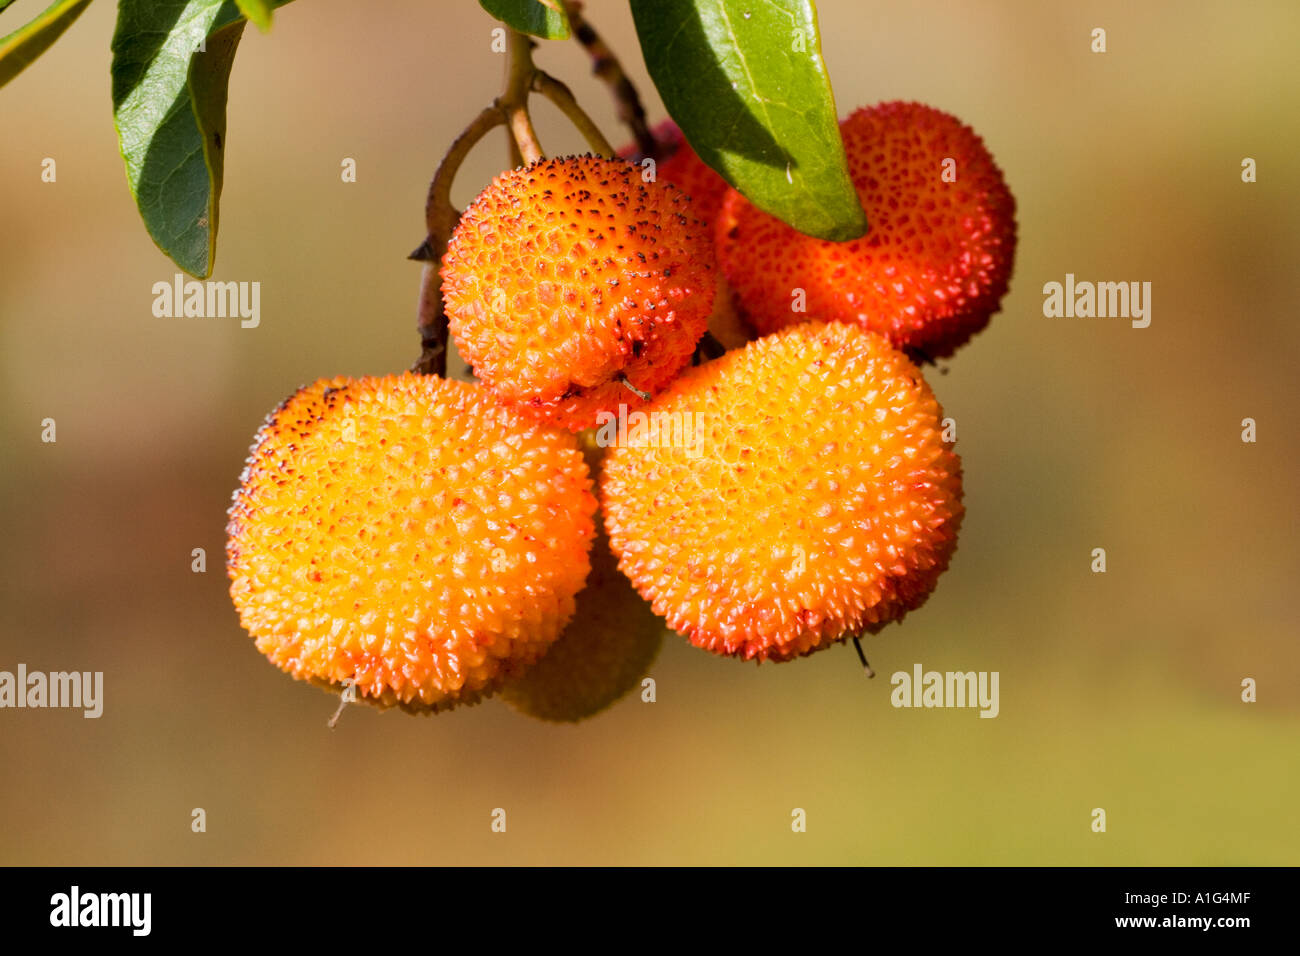 Tree fraises, Sierra de Huelva, Espagne Banque D'Images